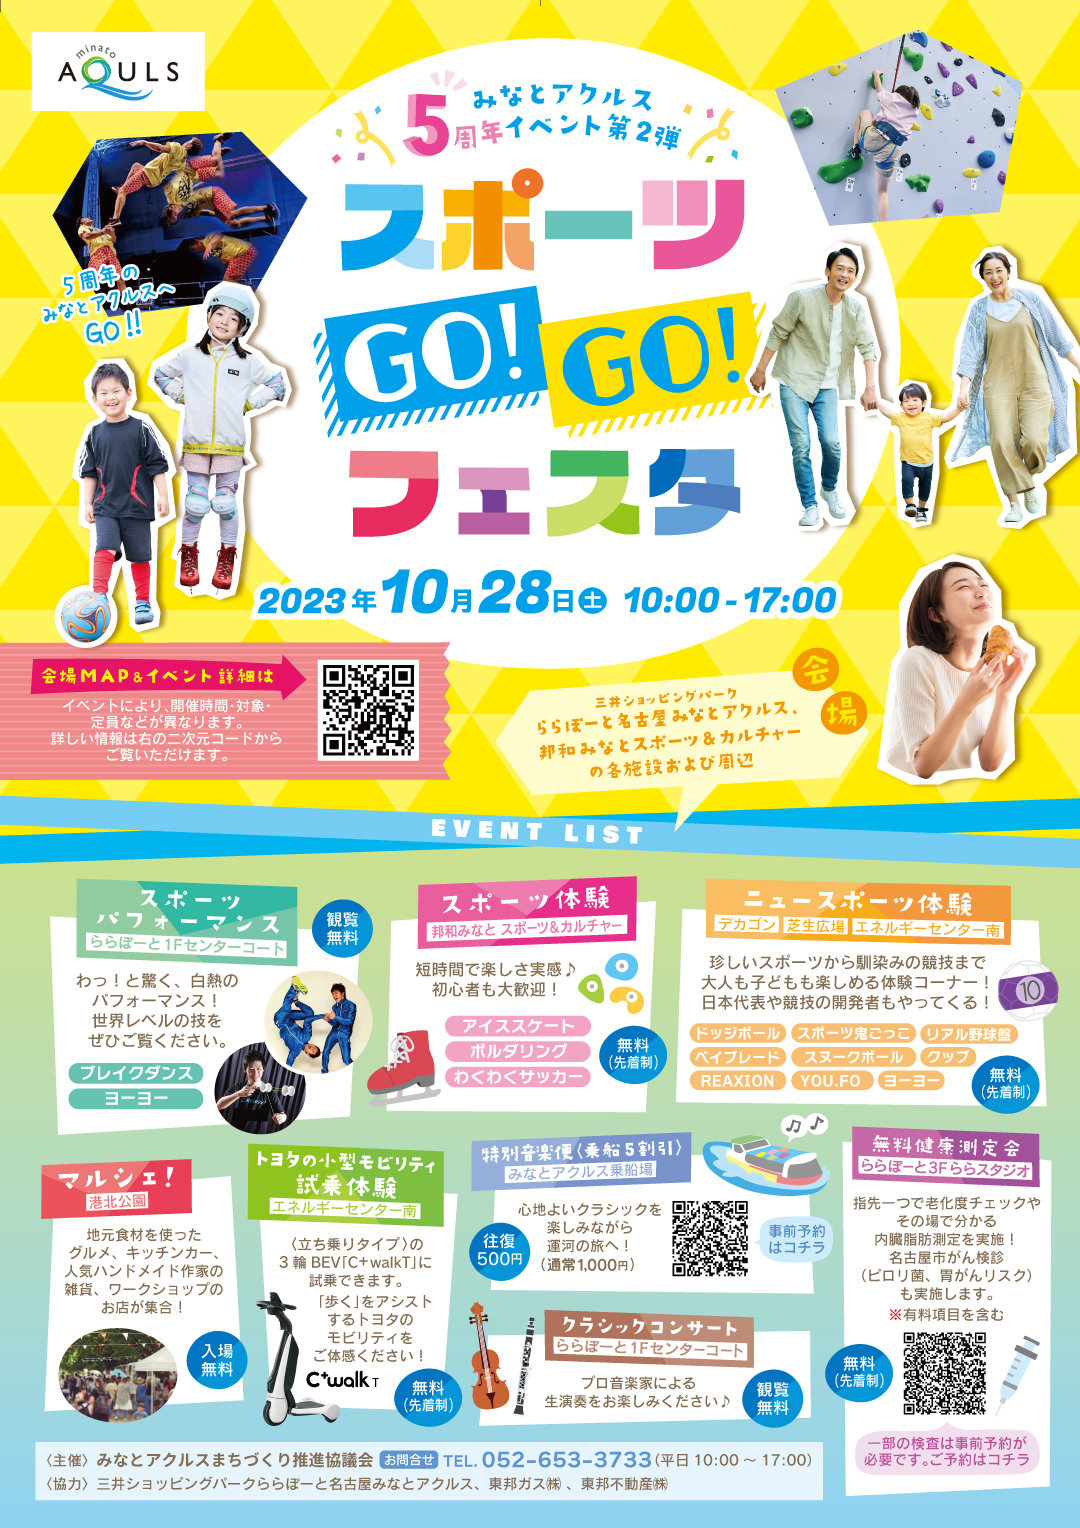 みなとアクルスまちびらき5周年イベント「スポーツ Go!Go!フェスタ」